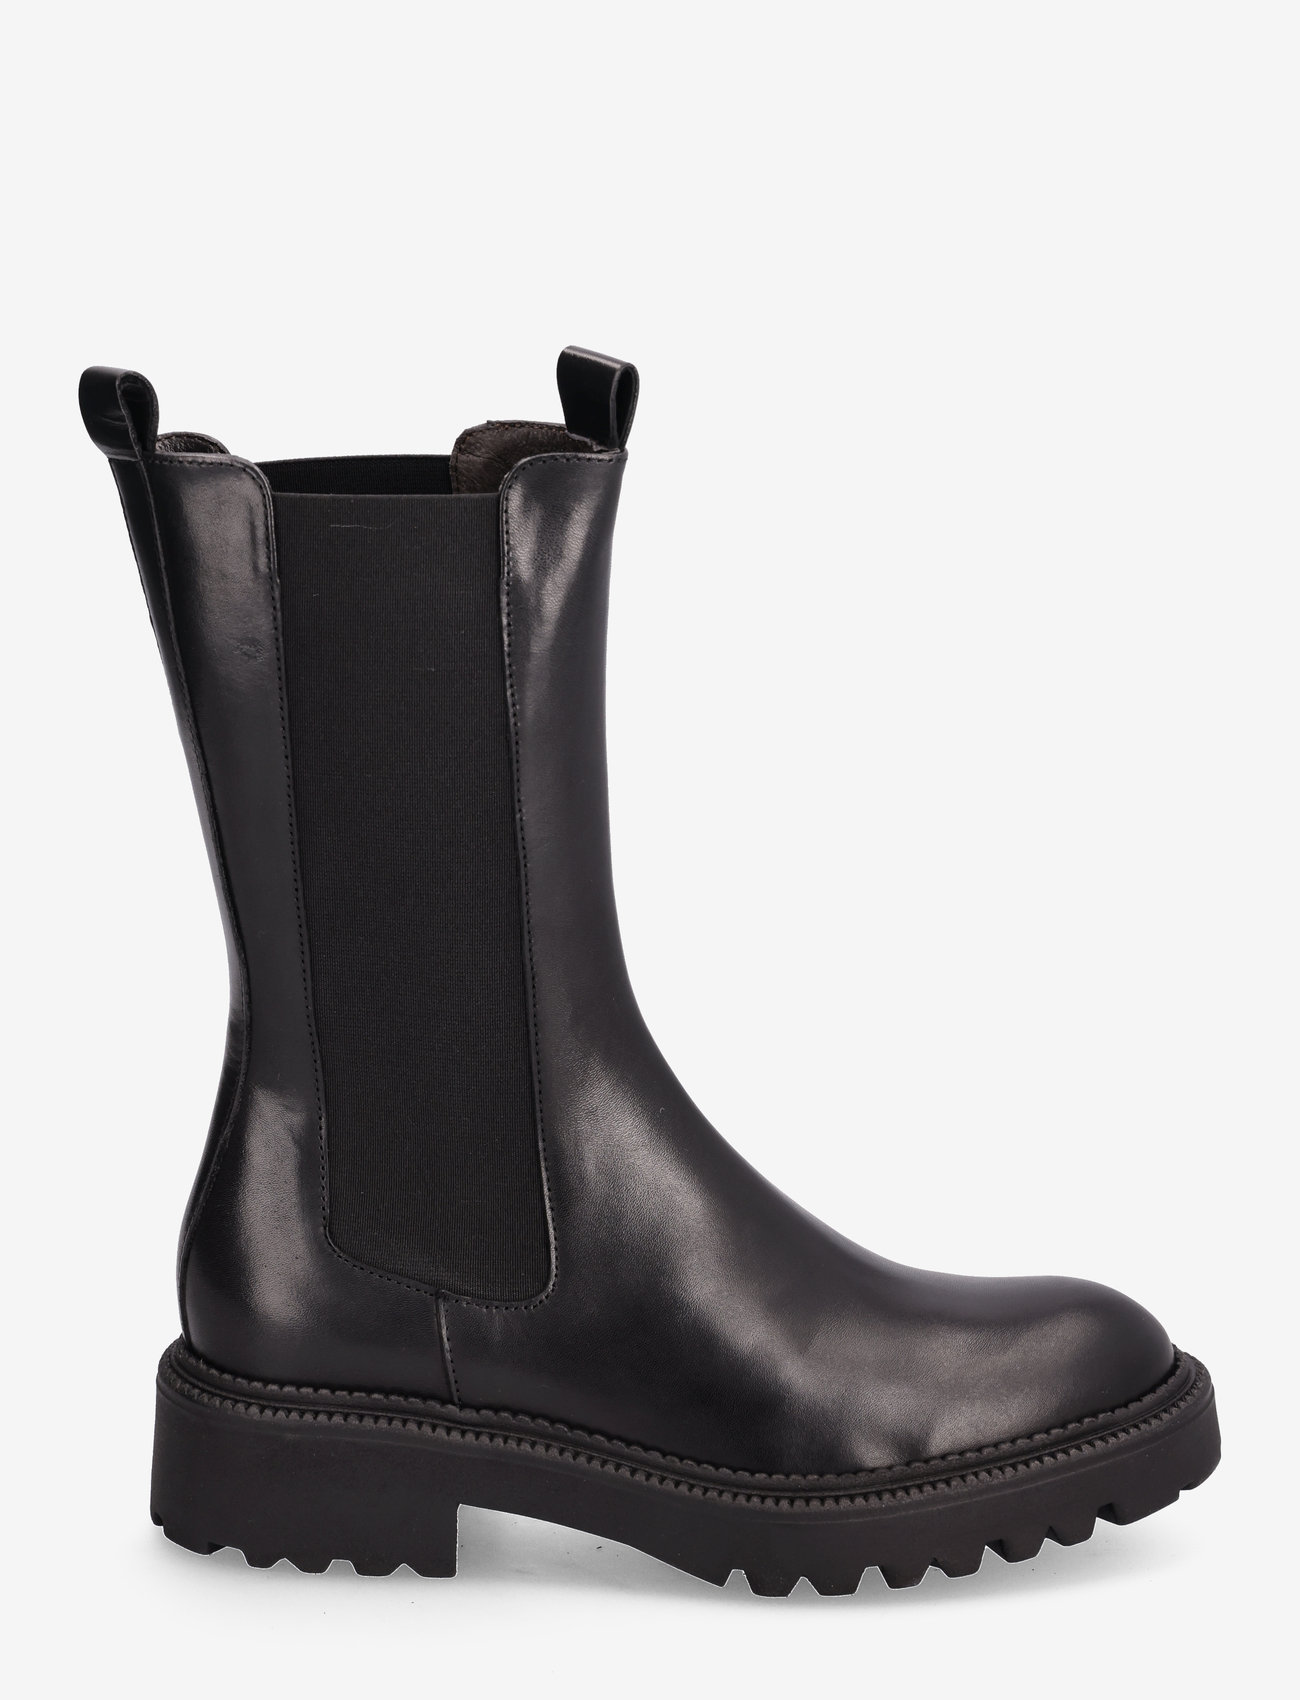 Billi Bi - Boots - chelsea boots - black calf - 1